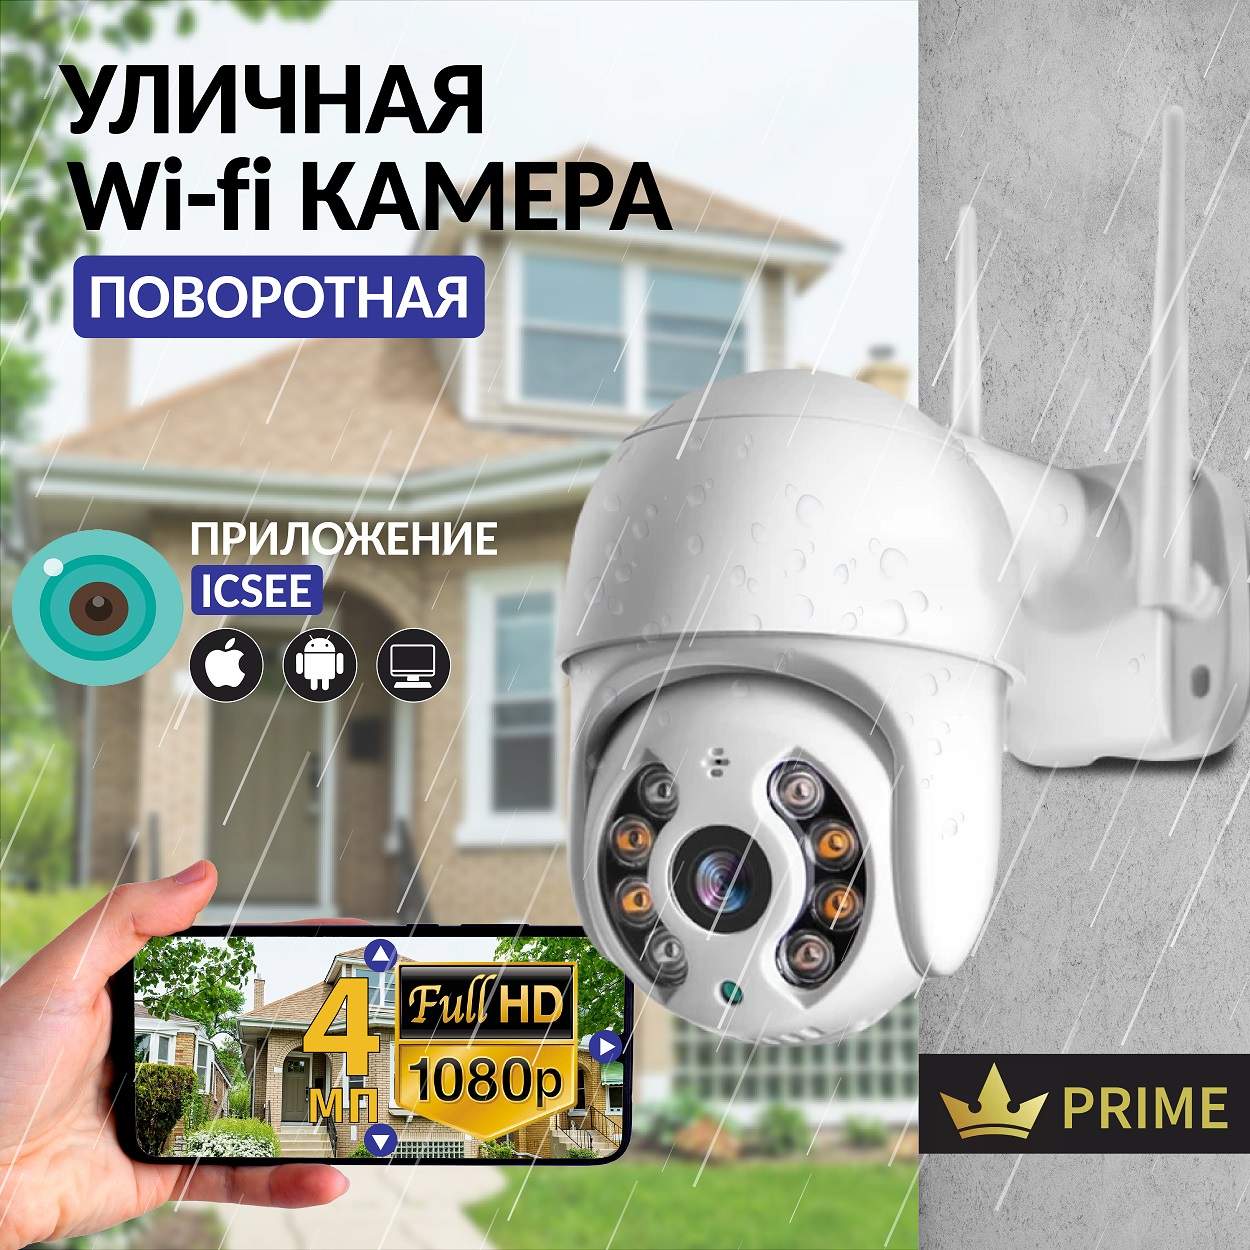 Камера видеонаблюдения IP VG-1360 Wifi уличная поворотная 4 Мп, VVG6986328 камера видеонаблюдения safeburg eye 202 домашняя и уличная wi fi камера